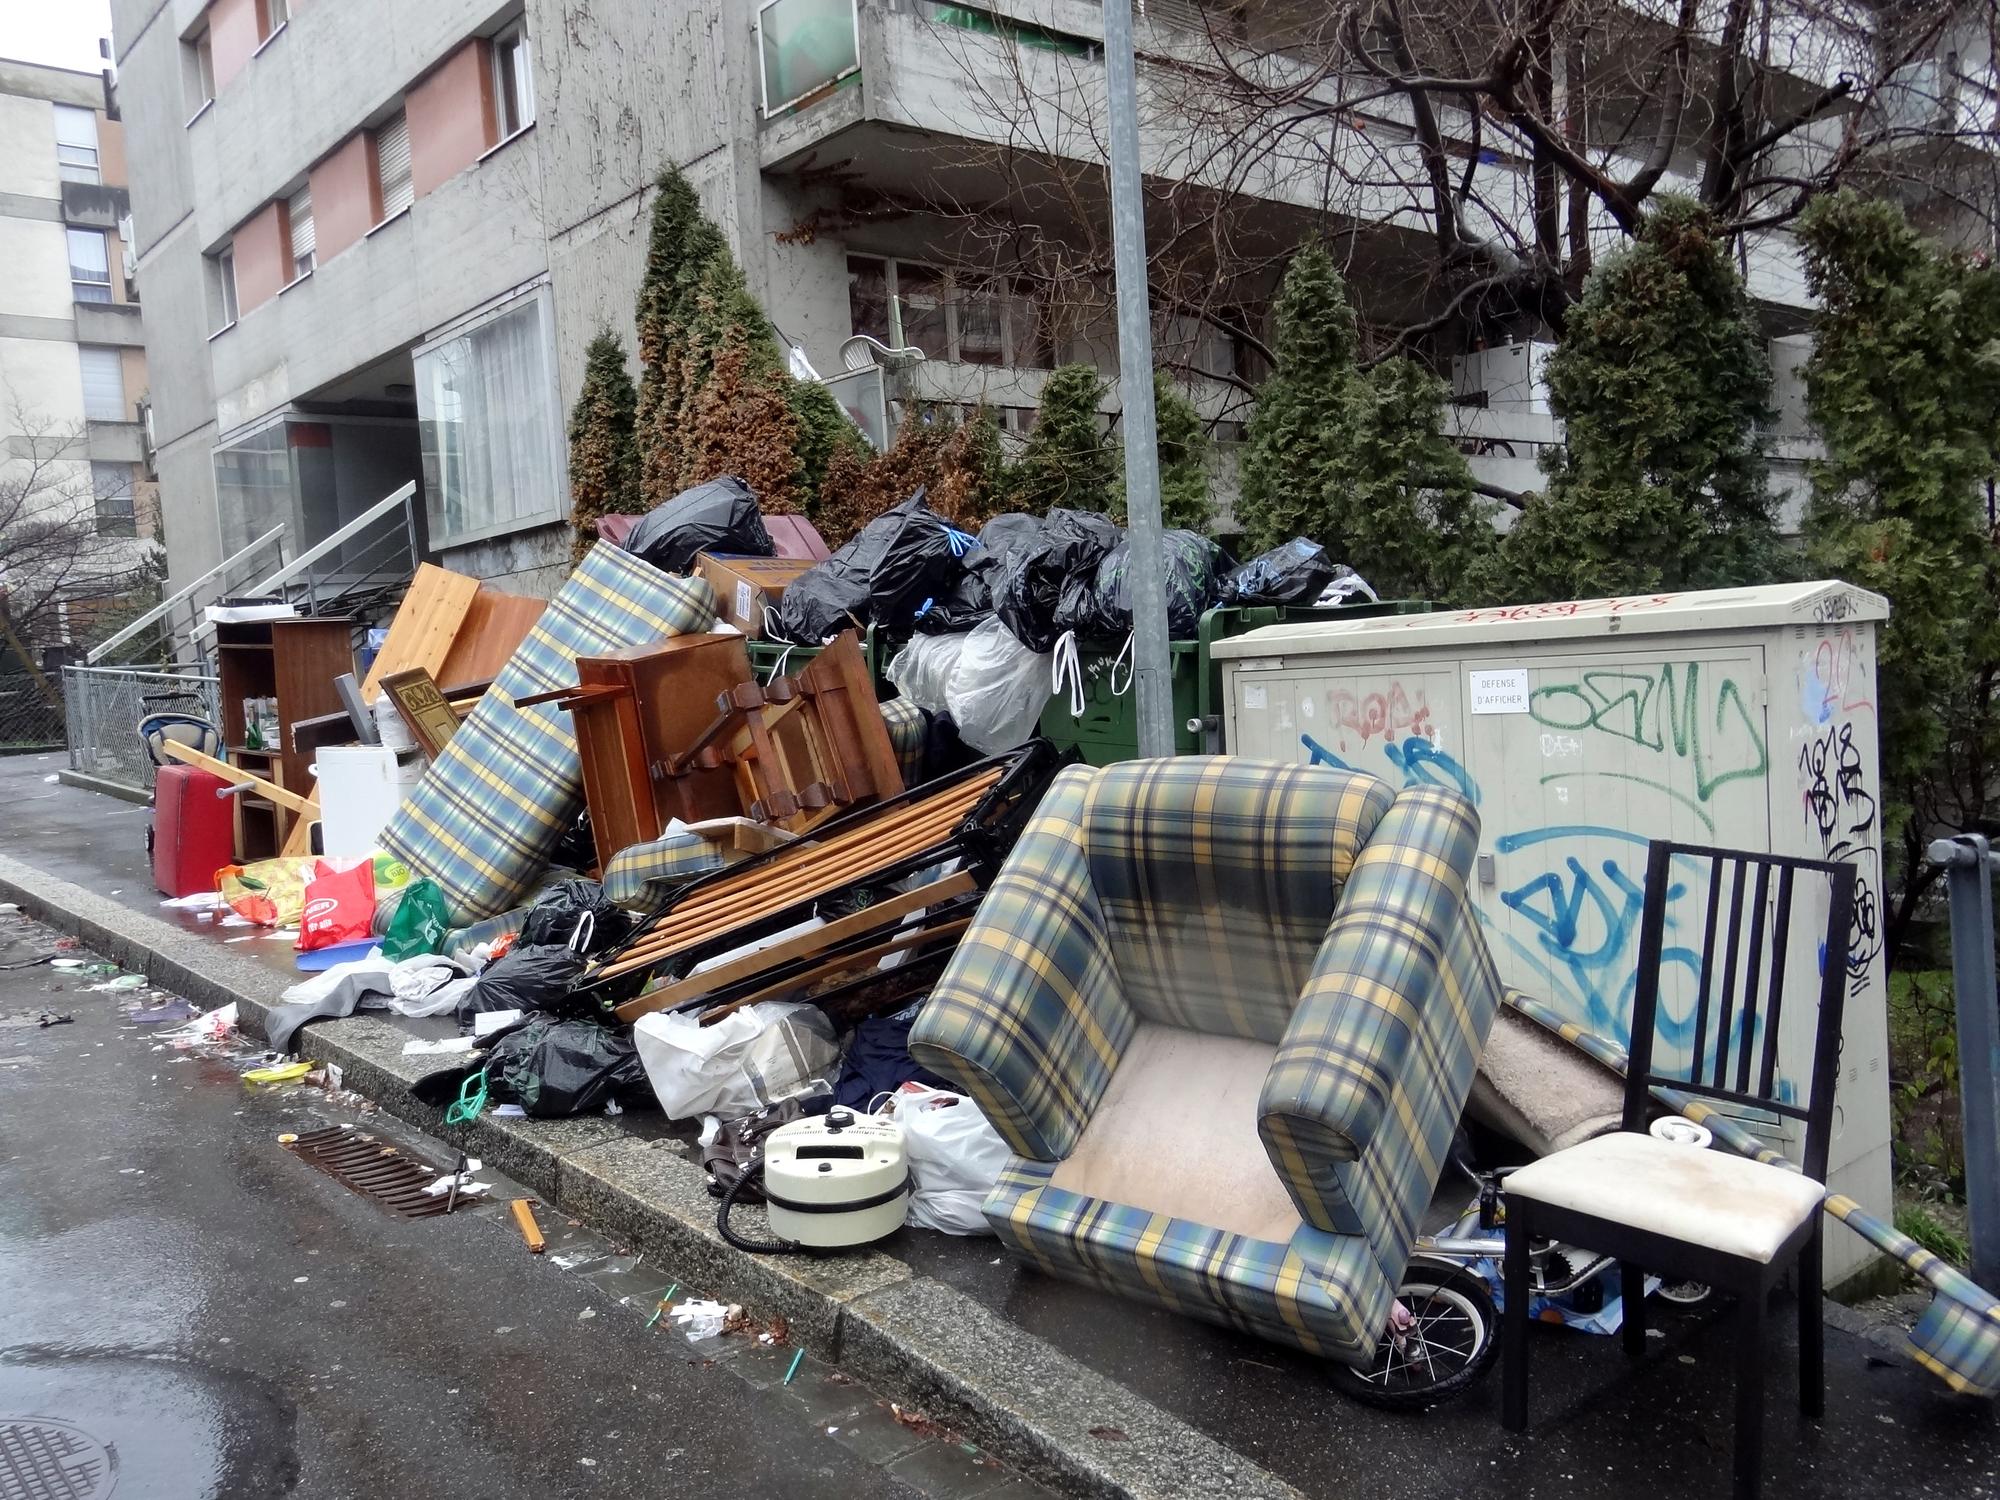 Des déchets s'amoncellent dans certains quartiers de Lausanne avant l'entrée en vigueur de la taxe, comme sur cette photo prise le 1er janvier. [Bazzanella]